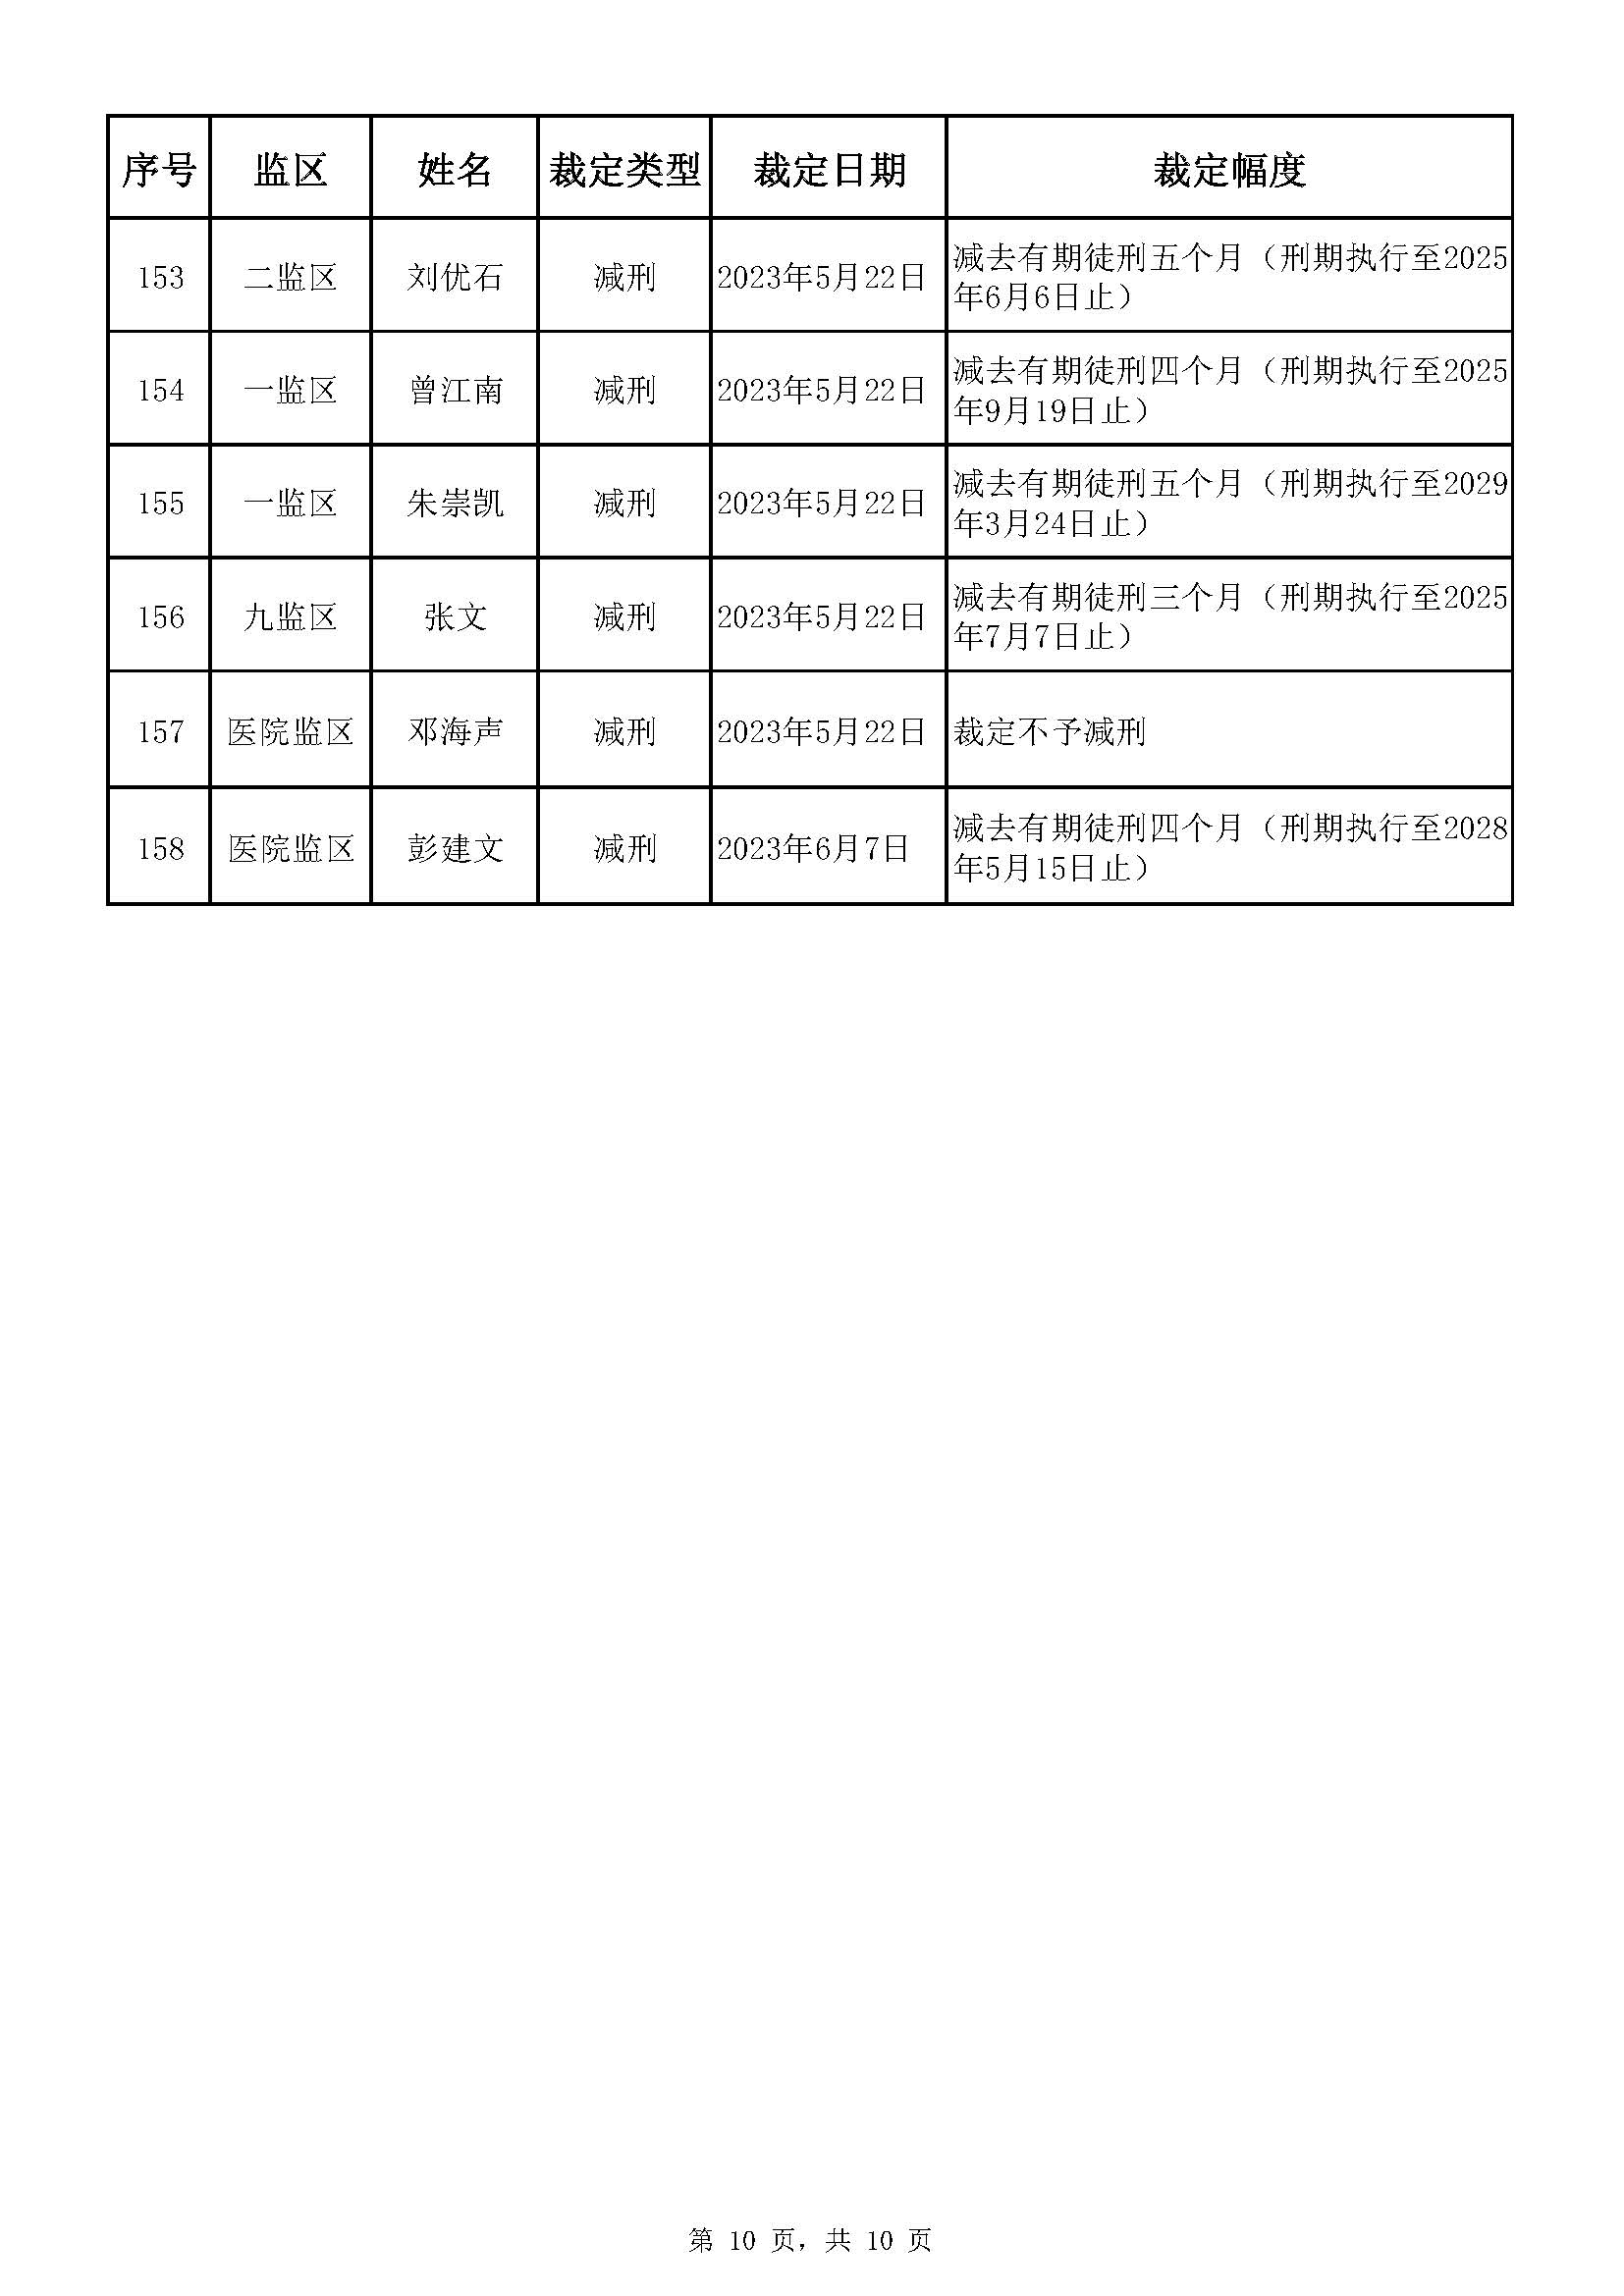 广东省明康监狱2023年第一批减刑假释裁定榜_页面_10.jpg